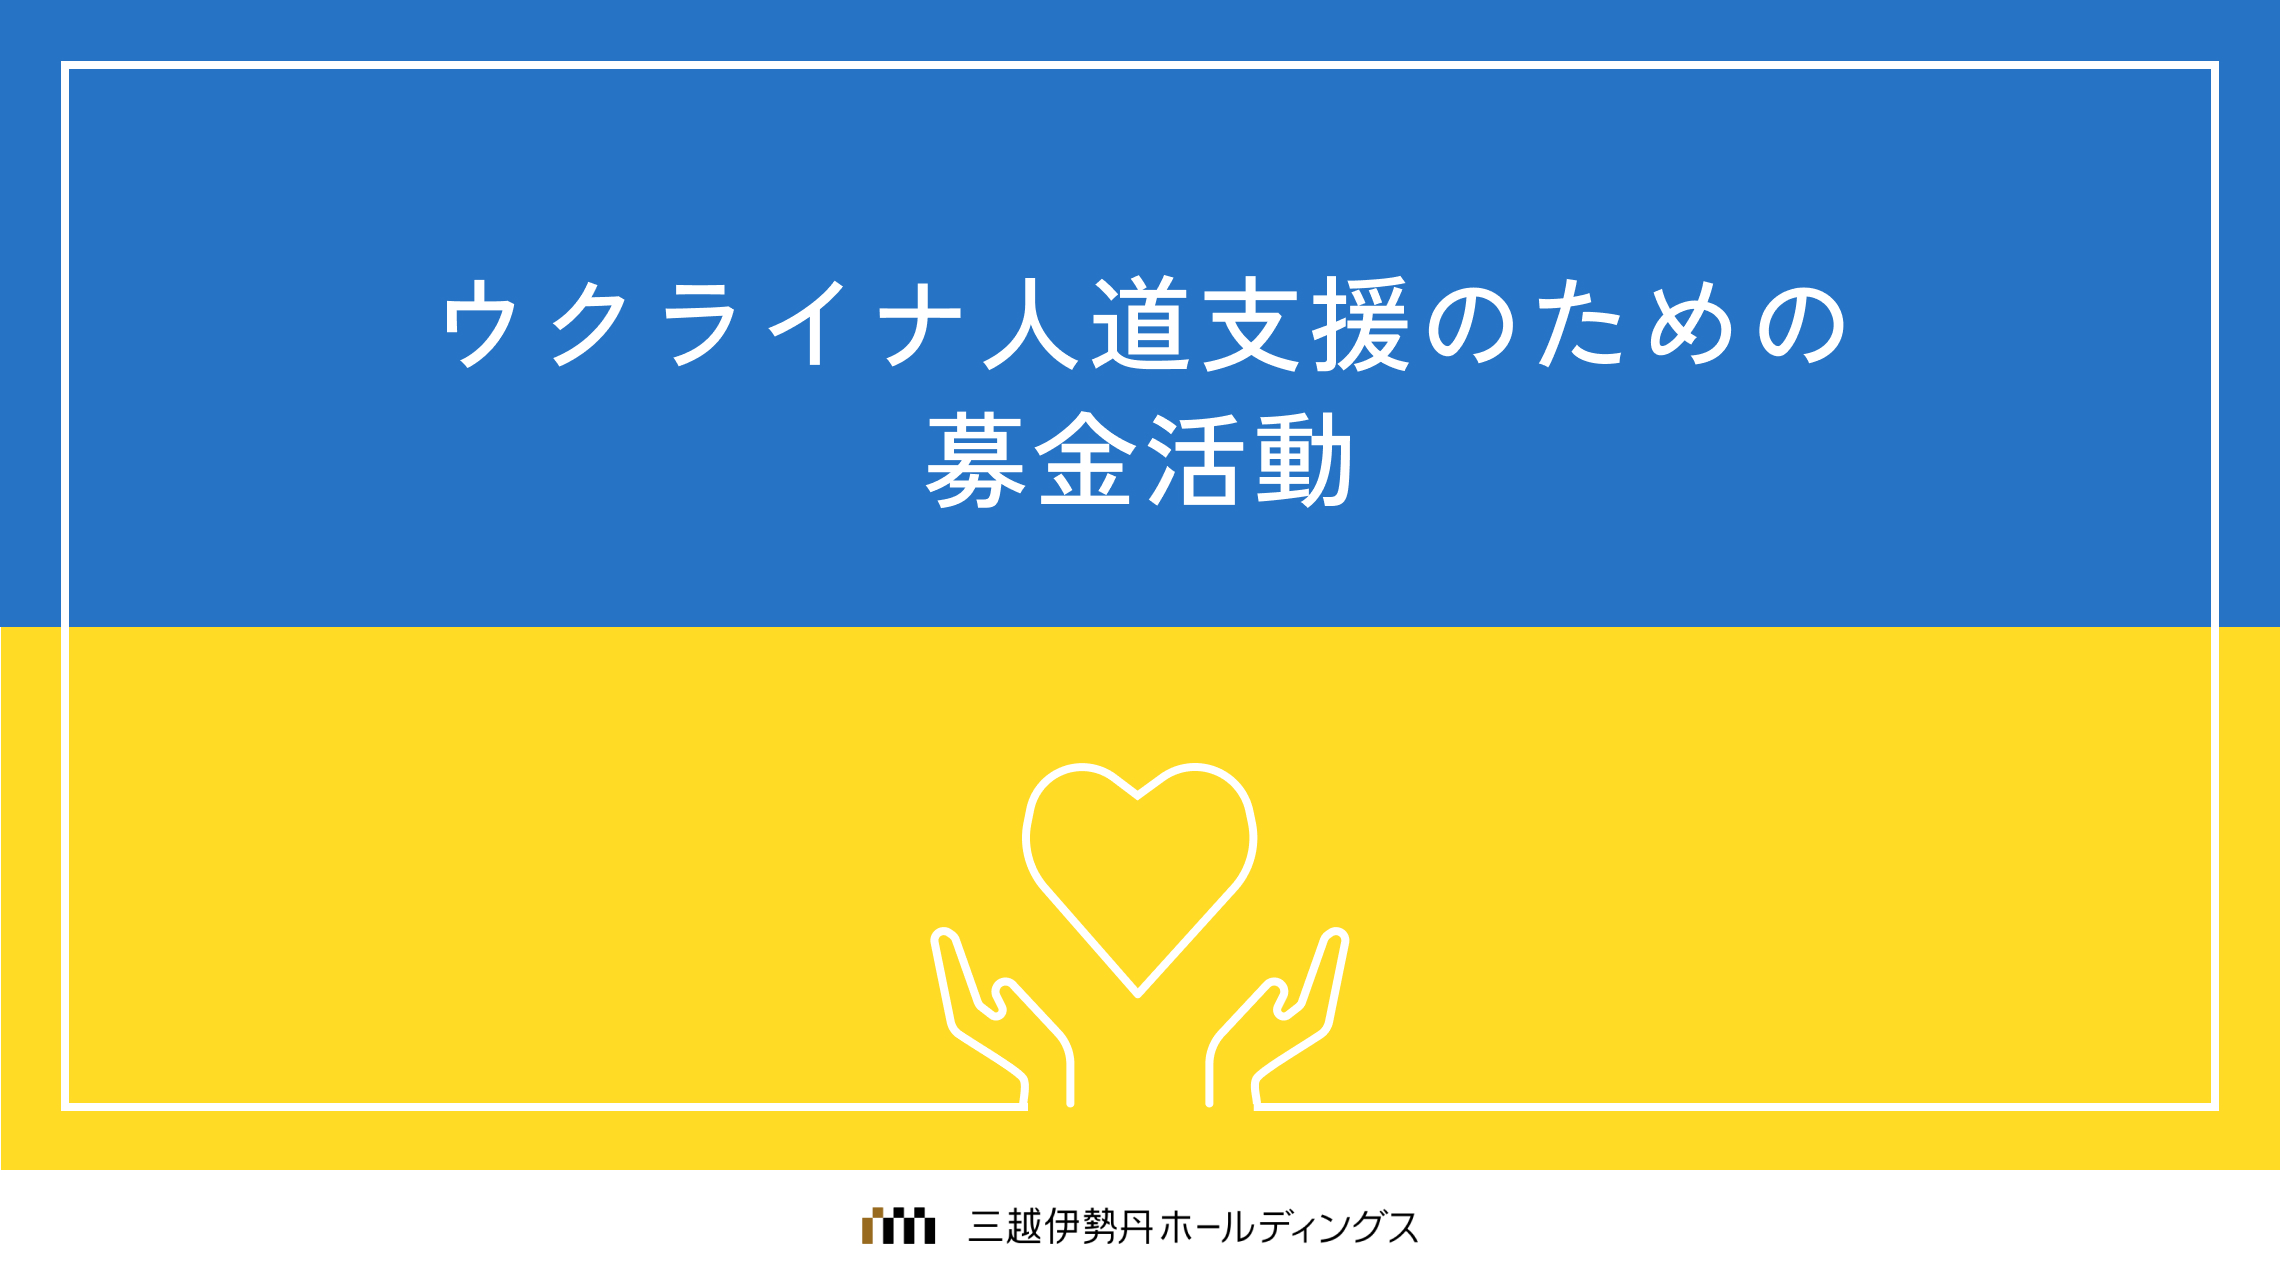 ウクライナ人道支援のための募金活動